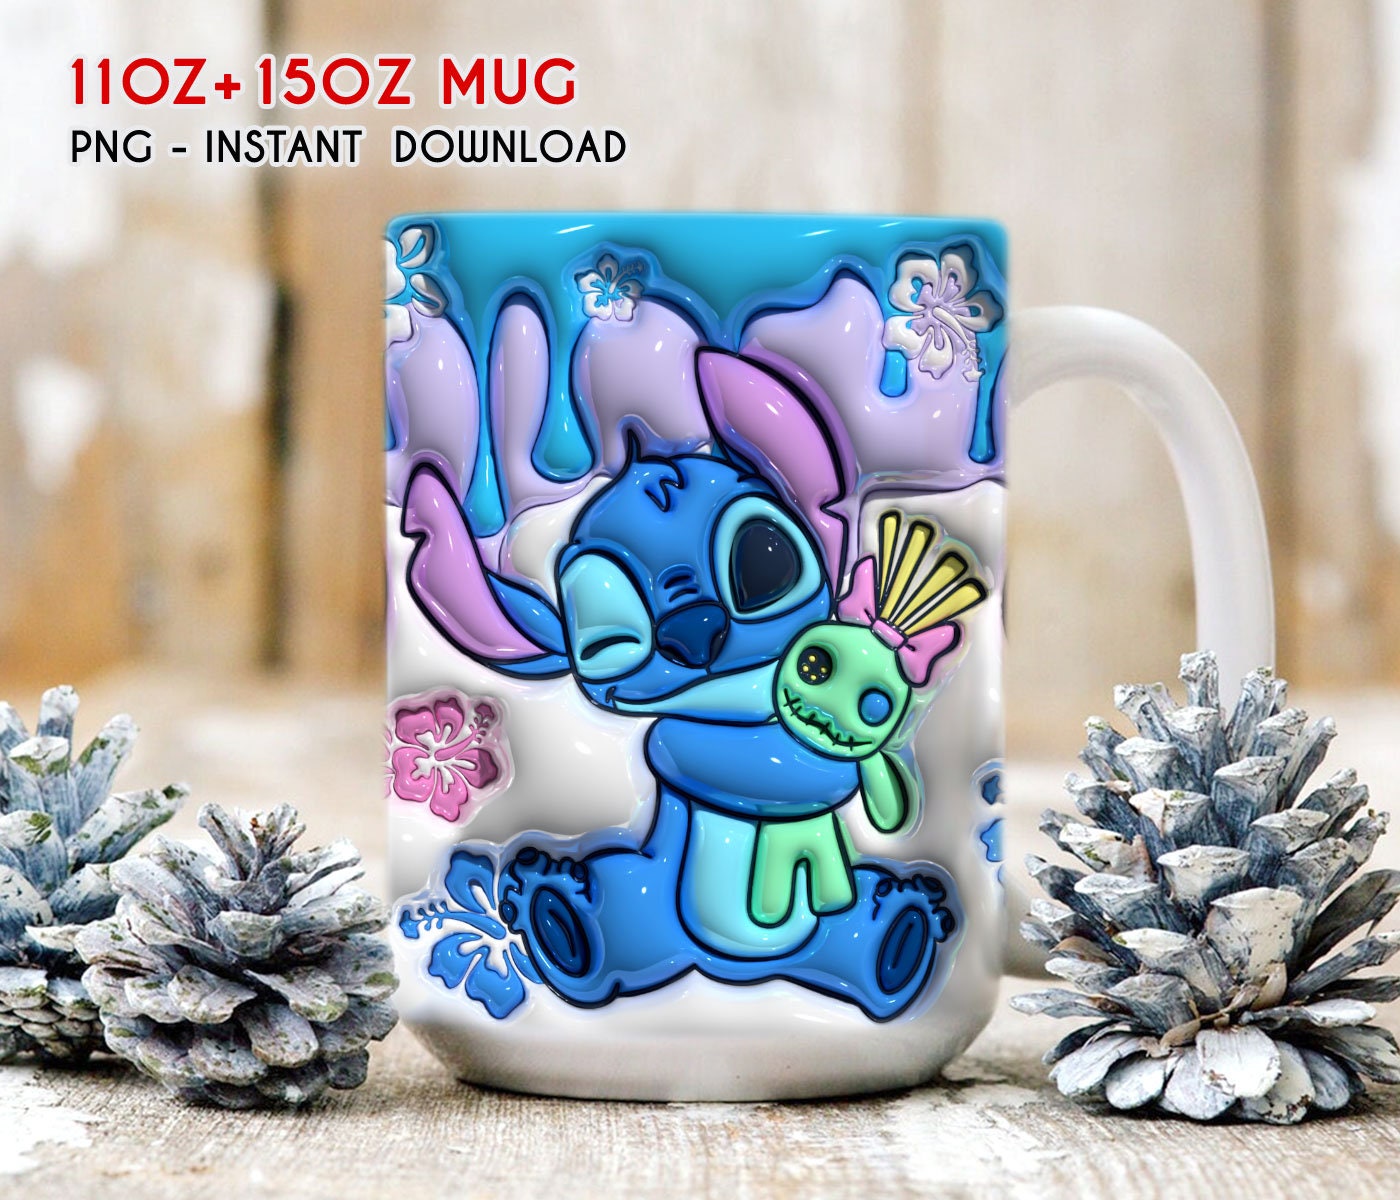 Tasse Stitch Disney mug Lilo et Stitch Fun Friends Feelings blanc -  Vaisselle/Mugs et tasses - La Boutique Disney